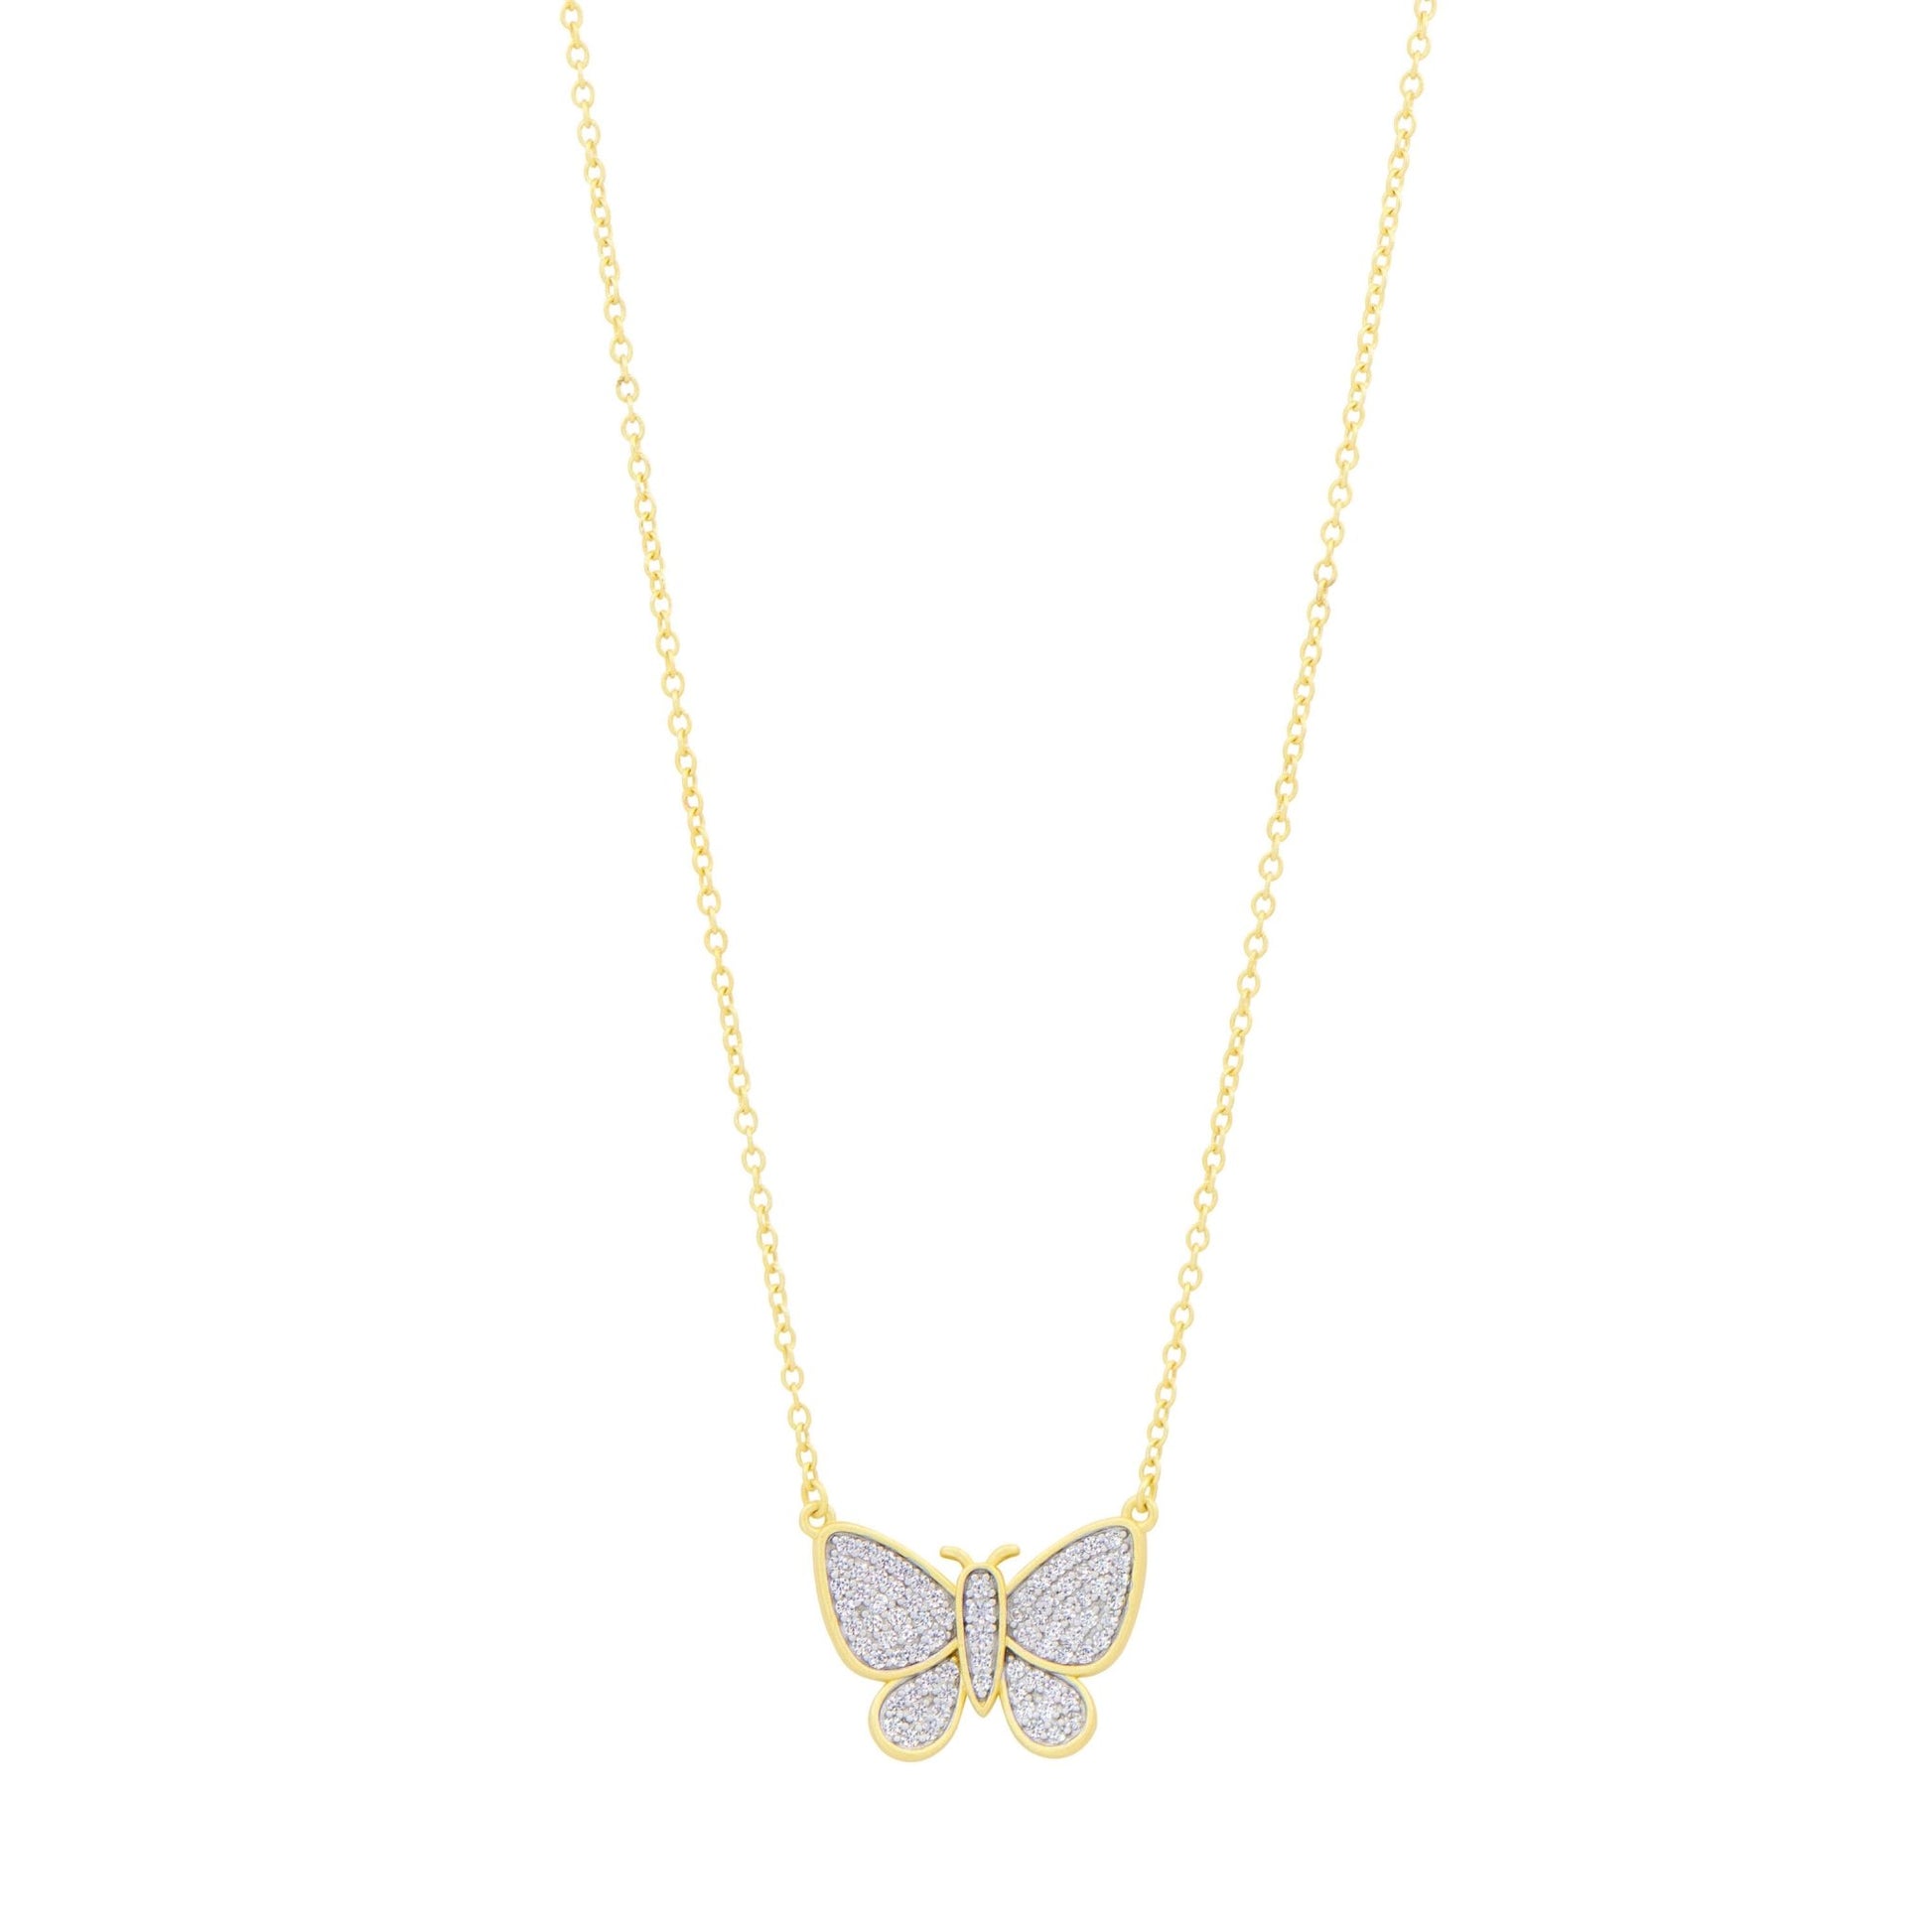 Butterflies in Bloom Pendant Necklace - FREIDA ROTHMAN